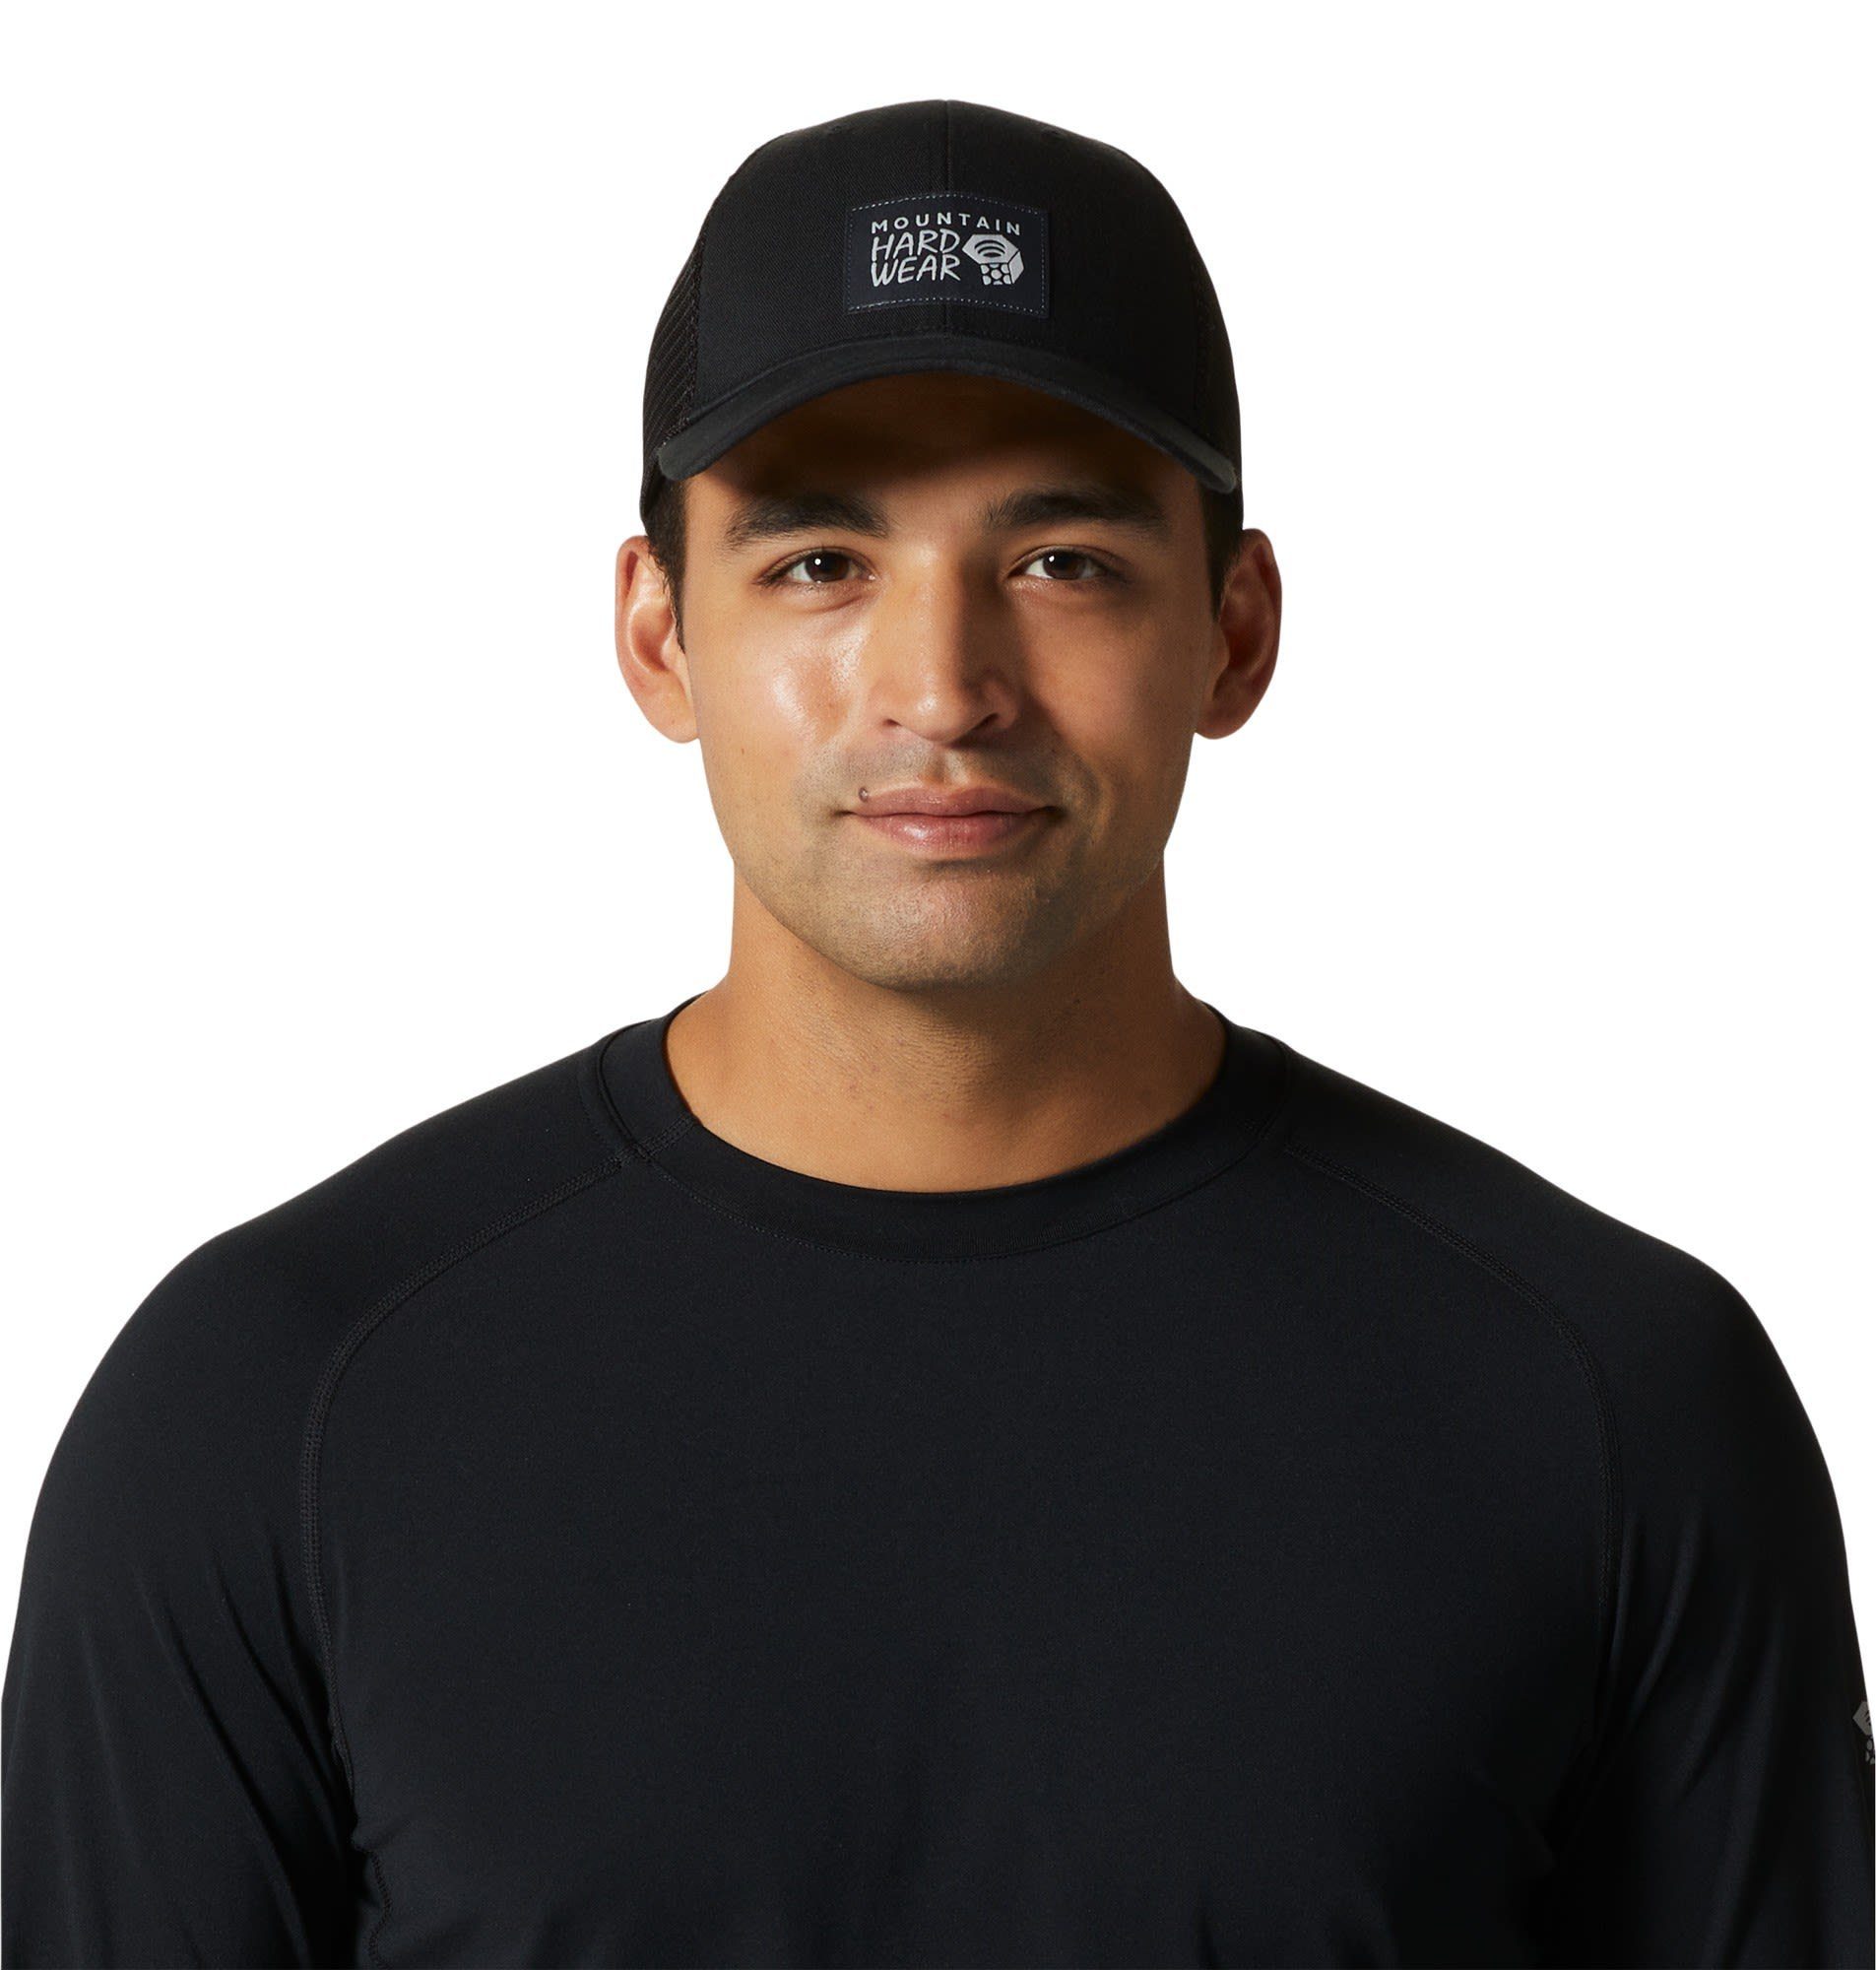 Mountain Hardwear Beanie Mountain Hardwear Trucker Logo Mhw Accessoires Hat Black